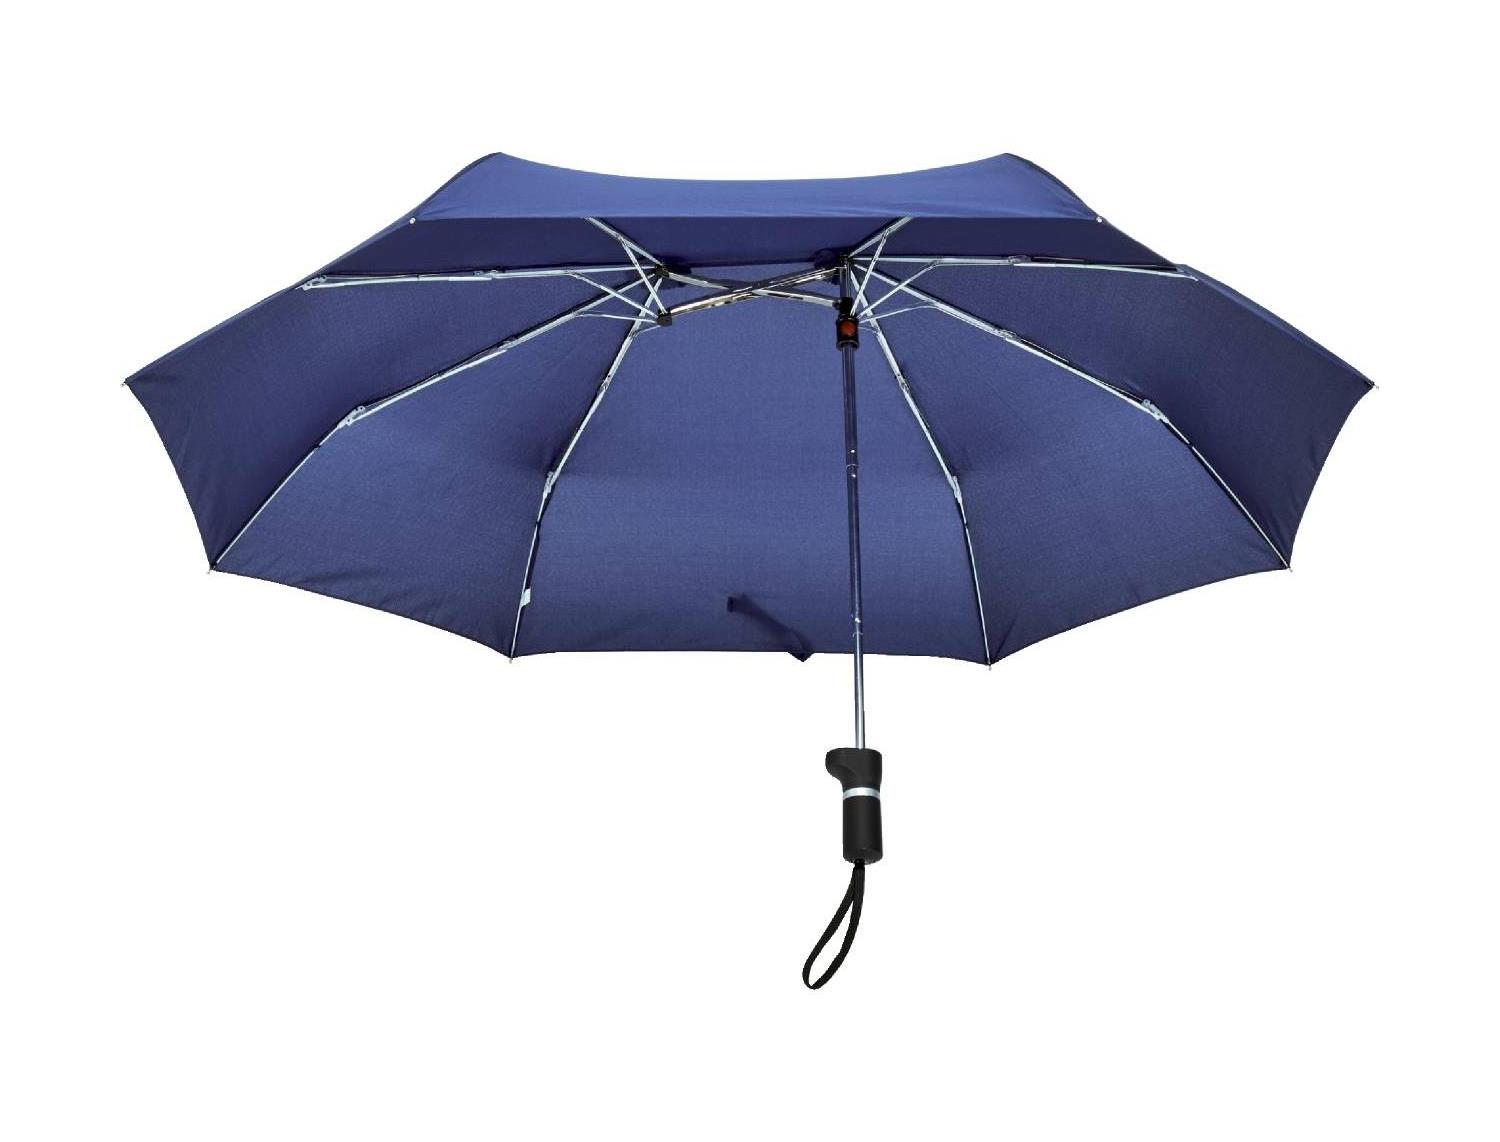 ｅ大きな荷物も濡れないワイドな折りたたみ傘